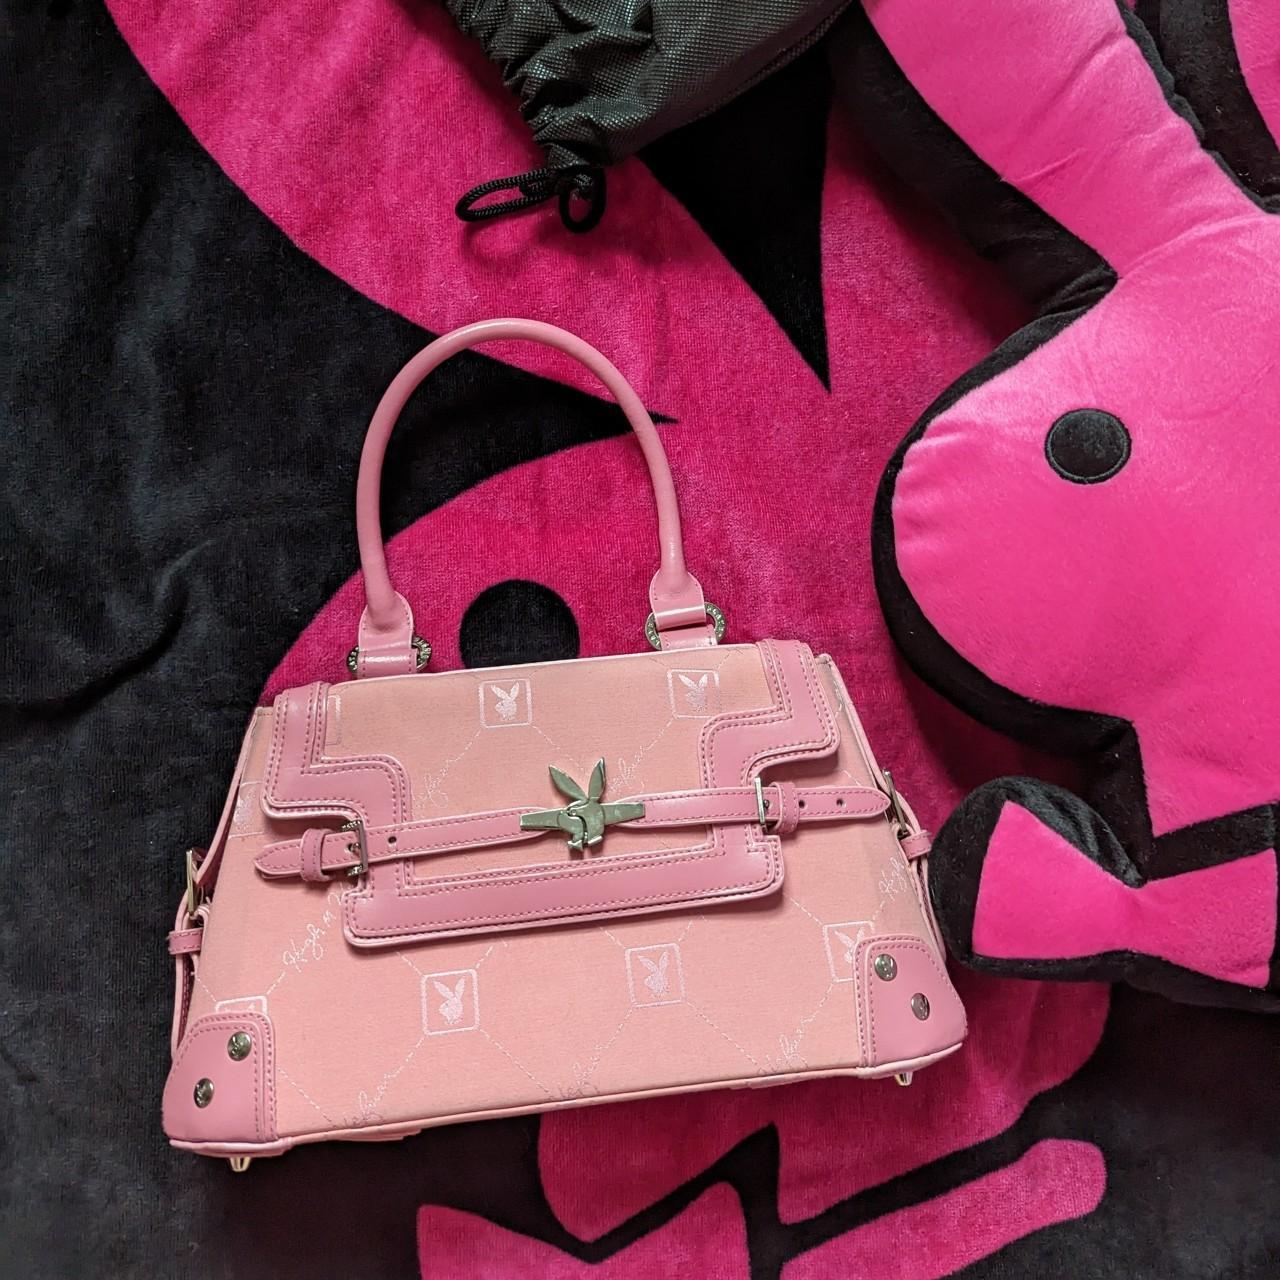 Playboy pink monogram hugh hefner bag / purse about... - Depop